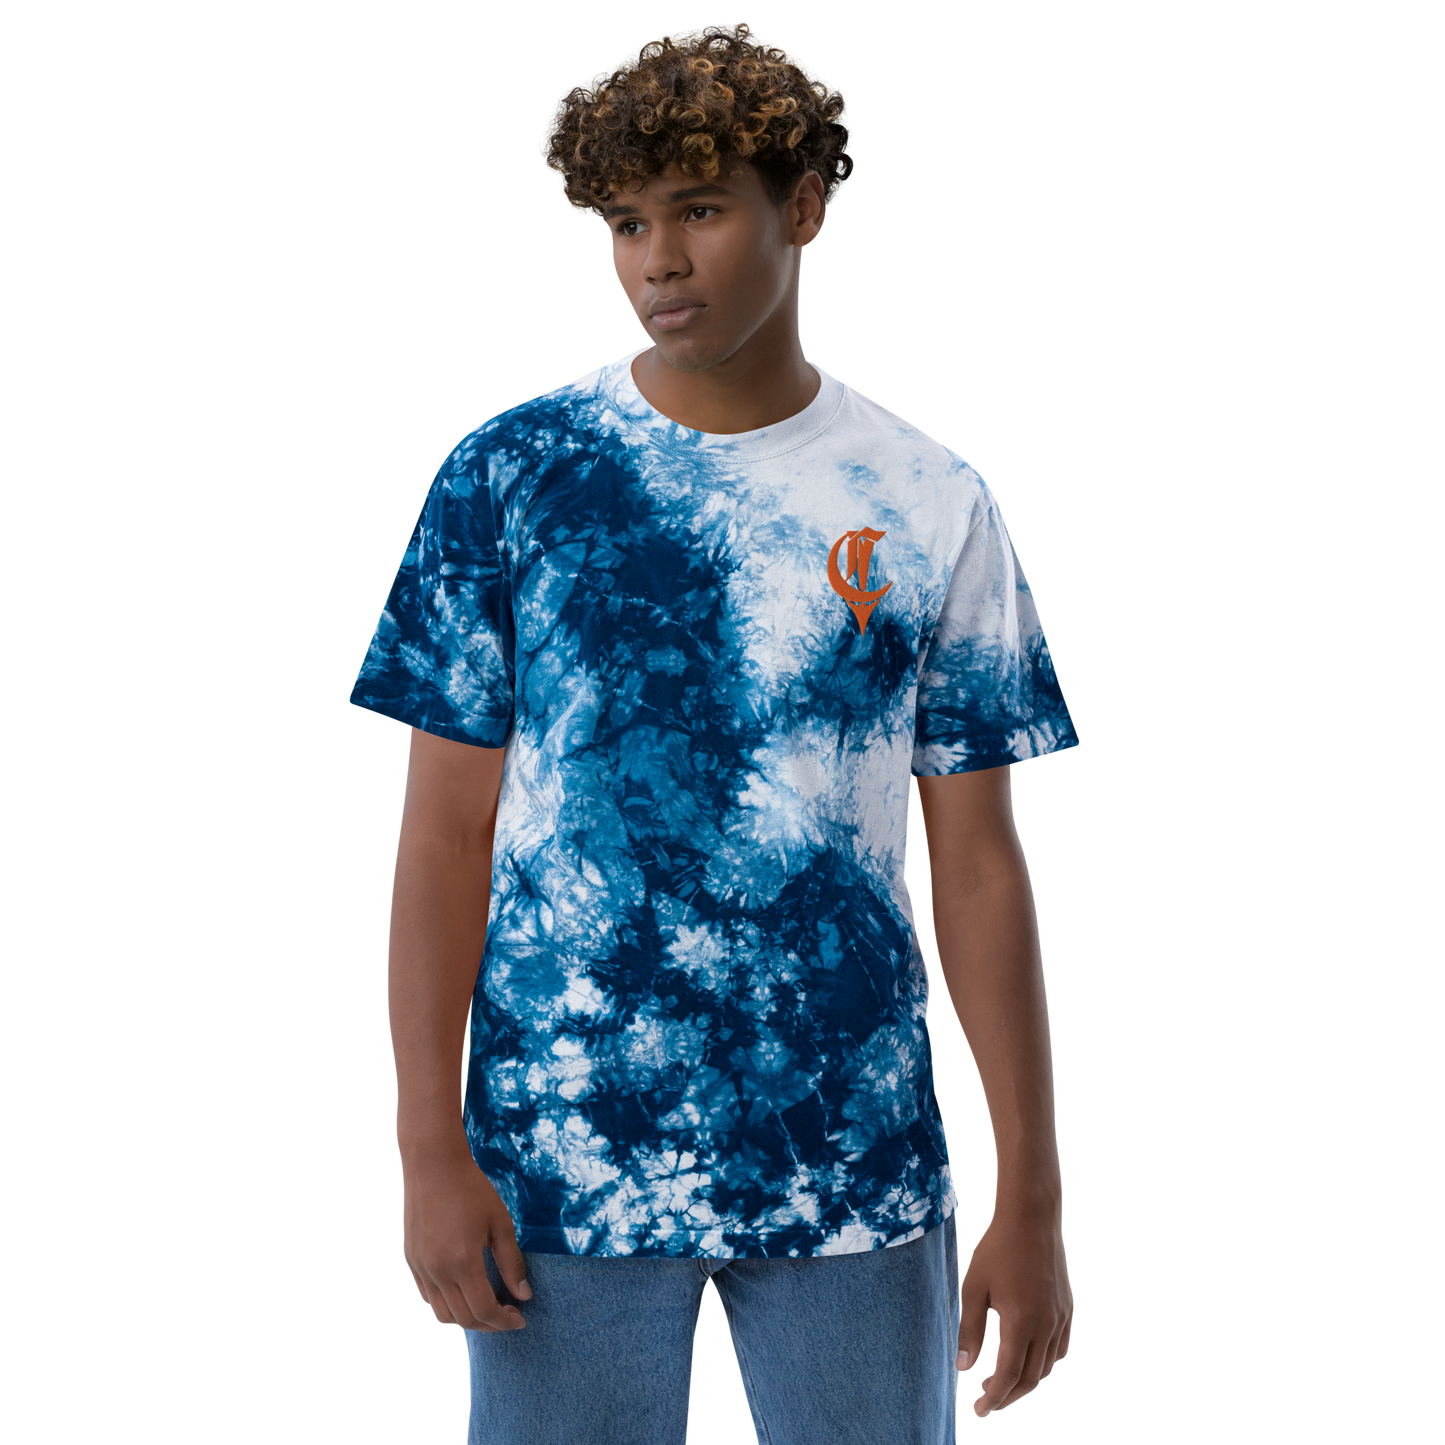 Oversized tie-dye t-shirt